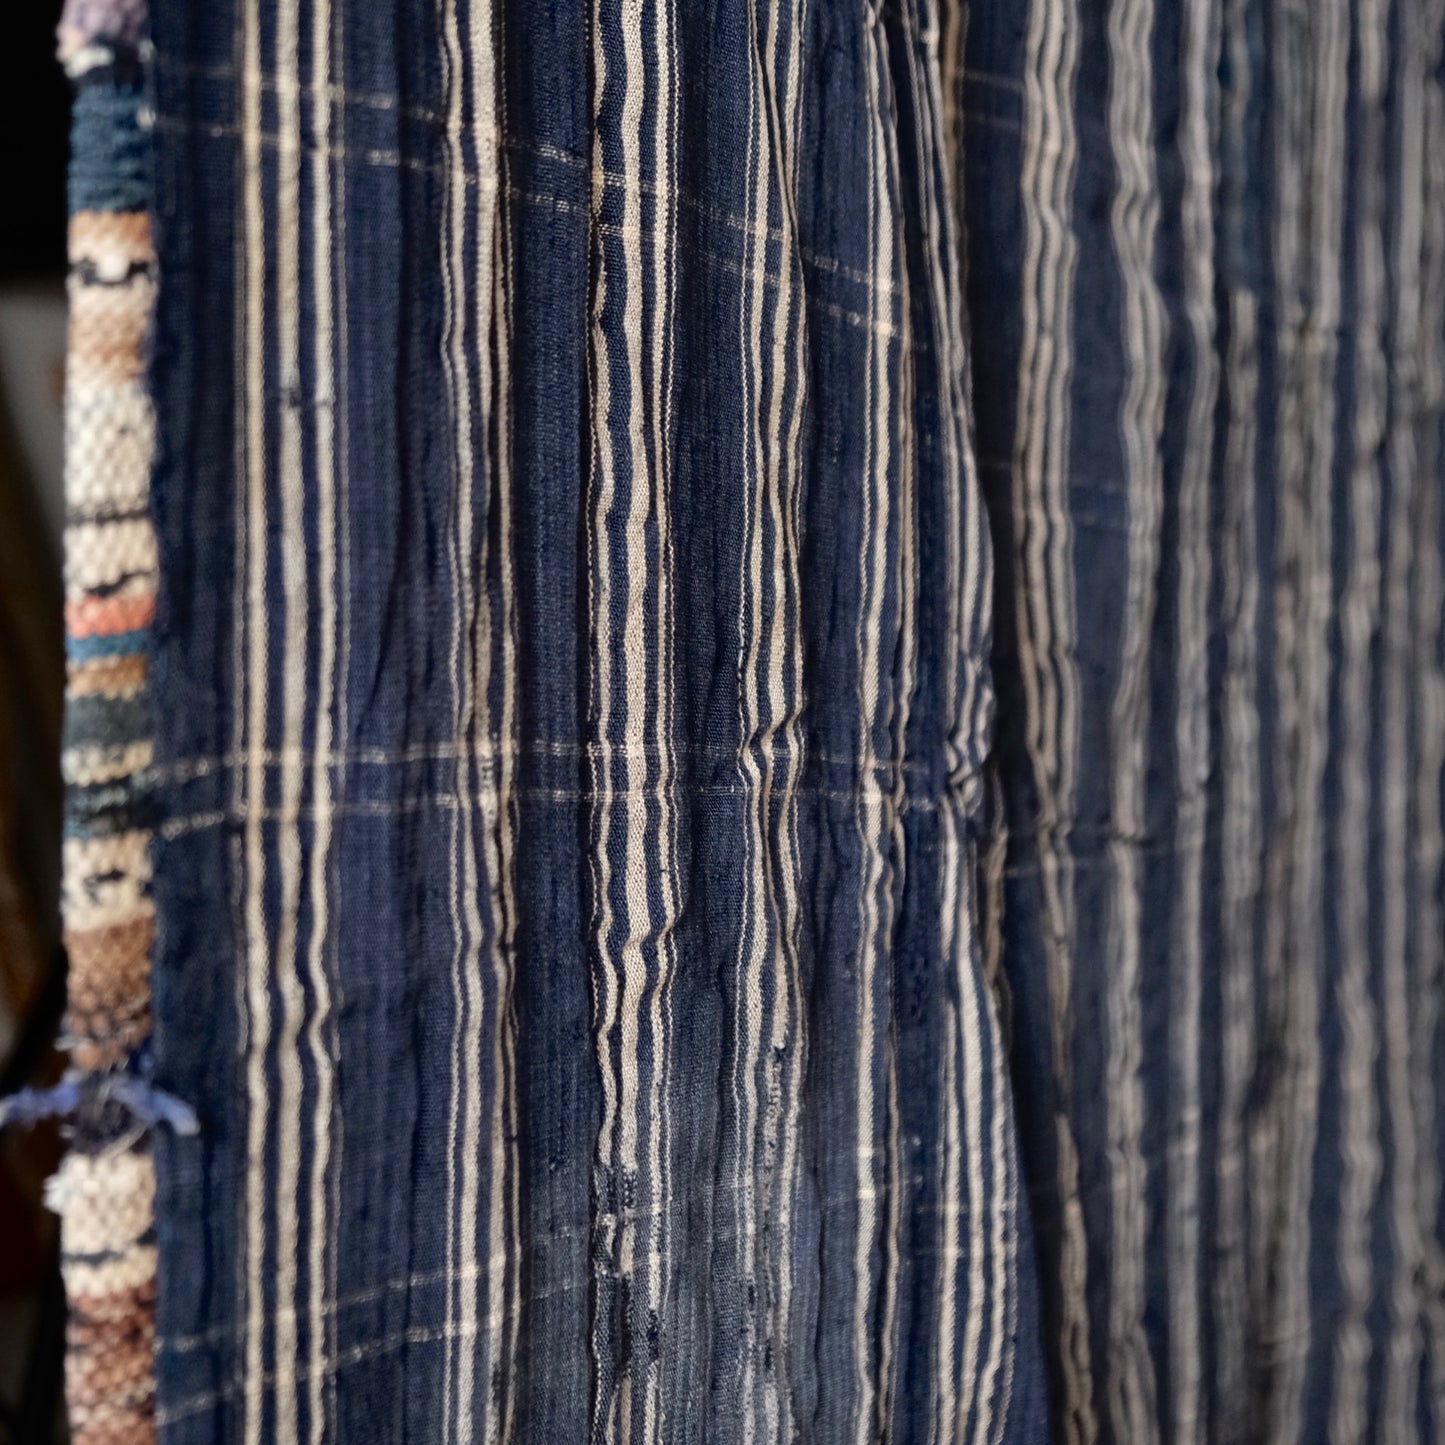 Vintage Japanese Sakiori and indigo-dyed Edo-Shima BORO rug